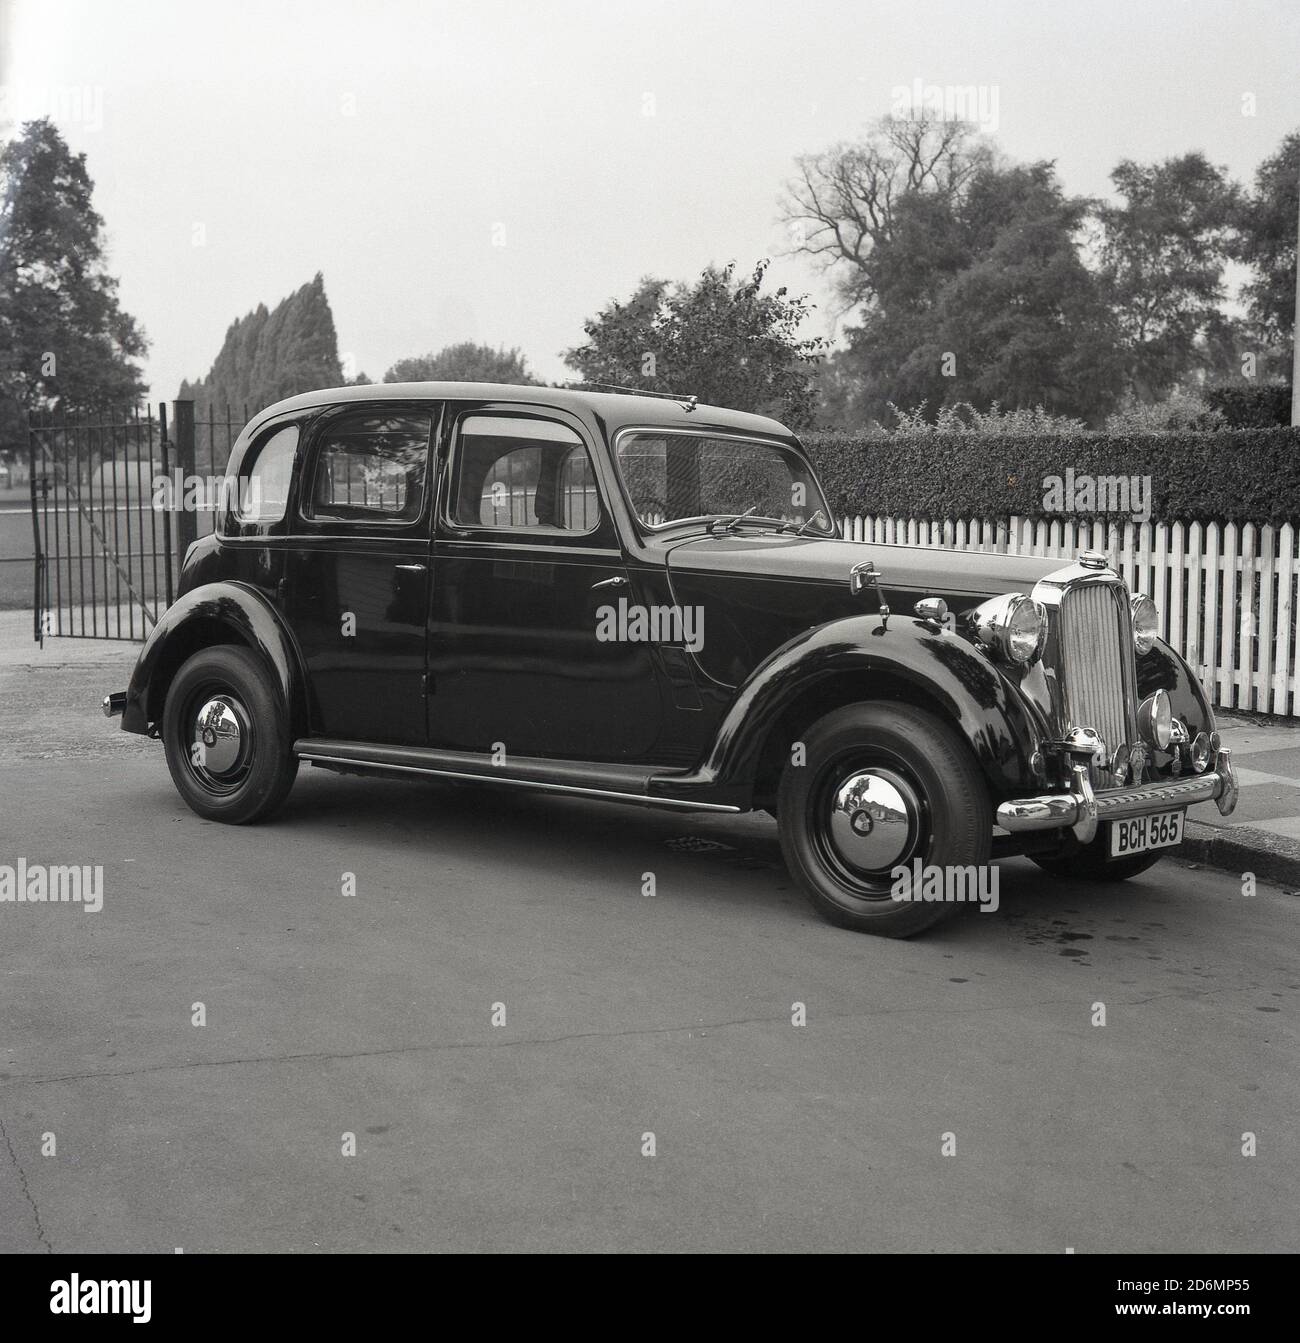 1960s, historisch, ein eleganter Rover 16-Wagen, der an einem Eingang zu einem Vorstadtpark, South London, England, Großbritannien, geparkt ist. Eine viertürige Limousine mit einer Höchstgeschwindigkeit von 77 mph, britische Marke und gebaut zwischen 1937 und 1940. Stockfoto